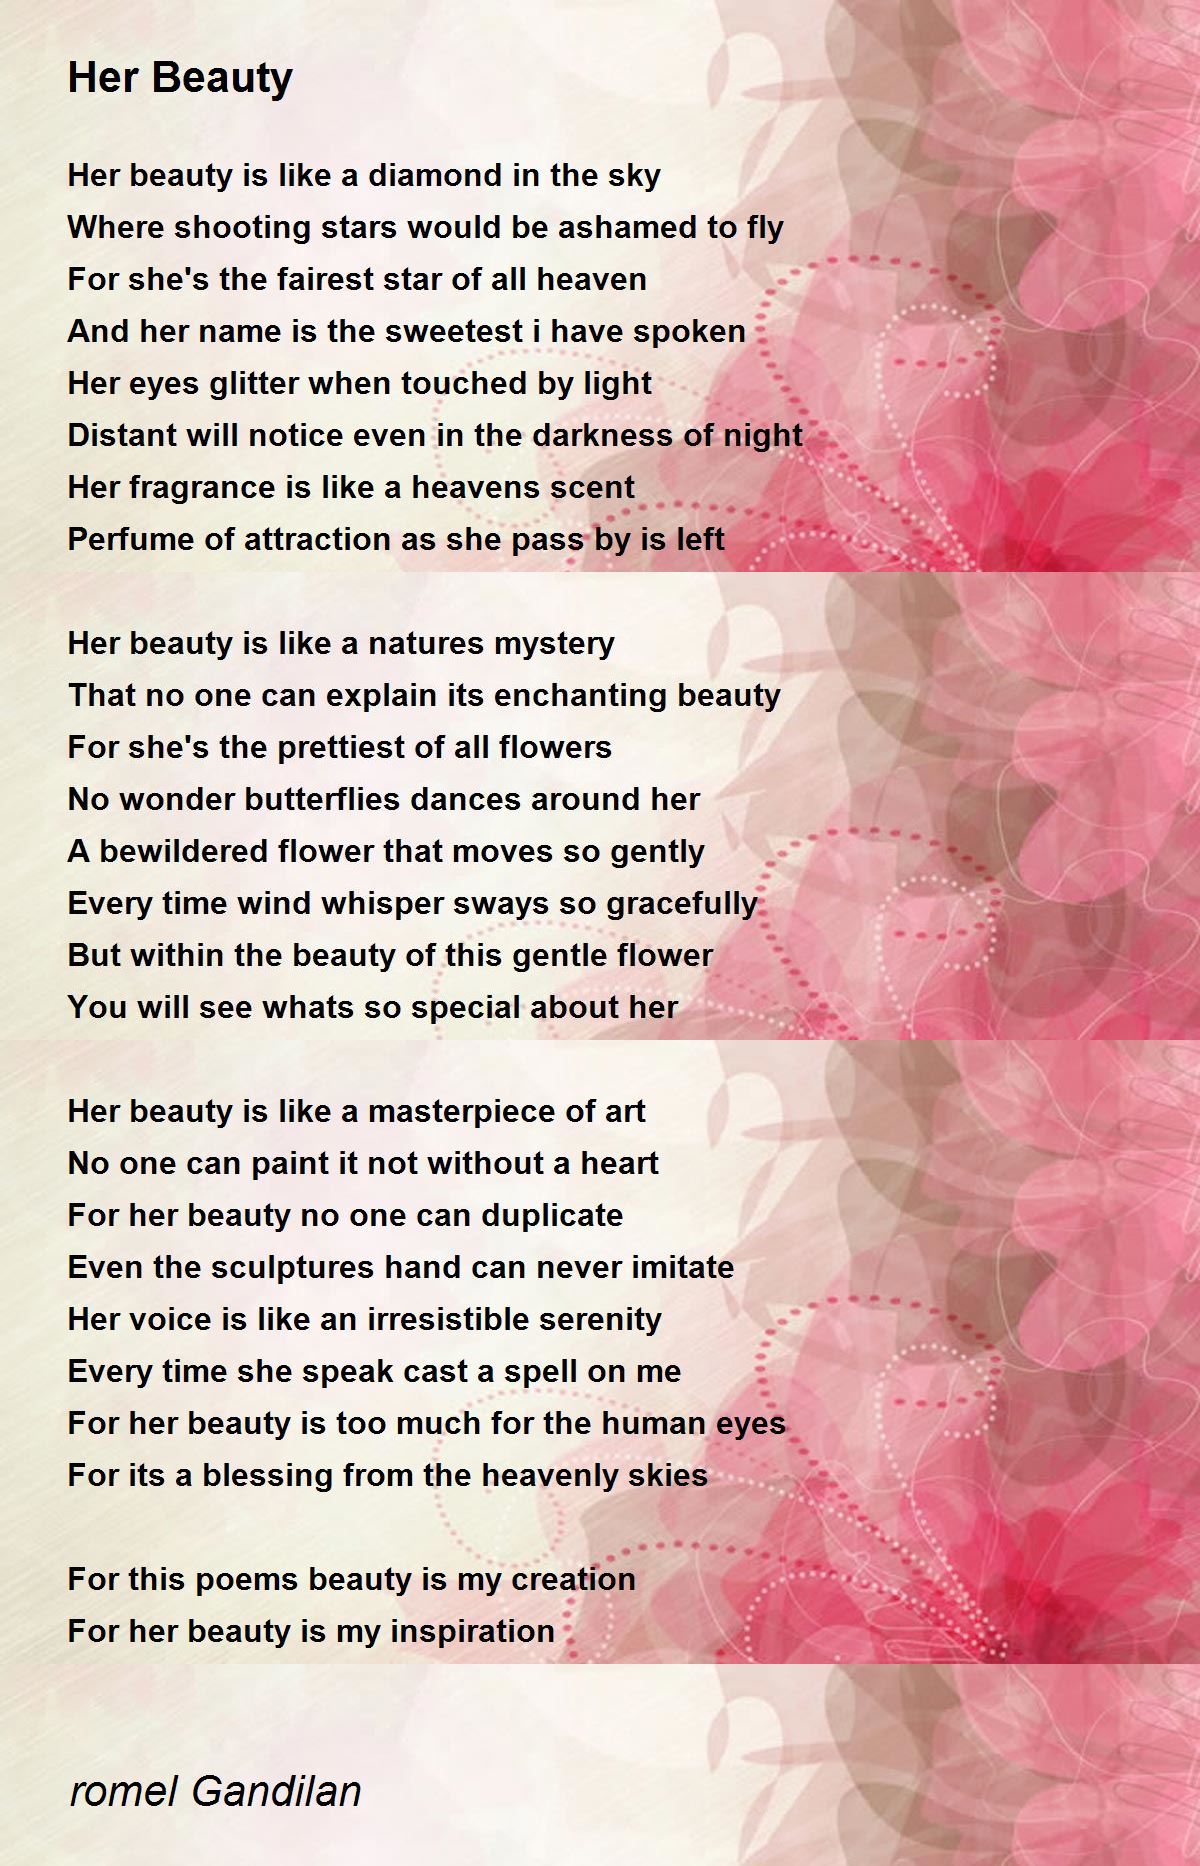 Her Beauty - Her Beauty Poem by romel Gandilan.